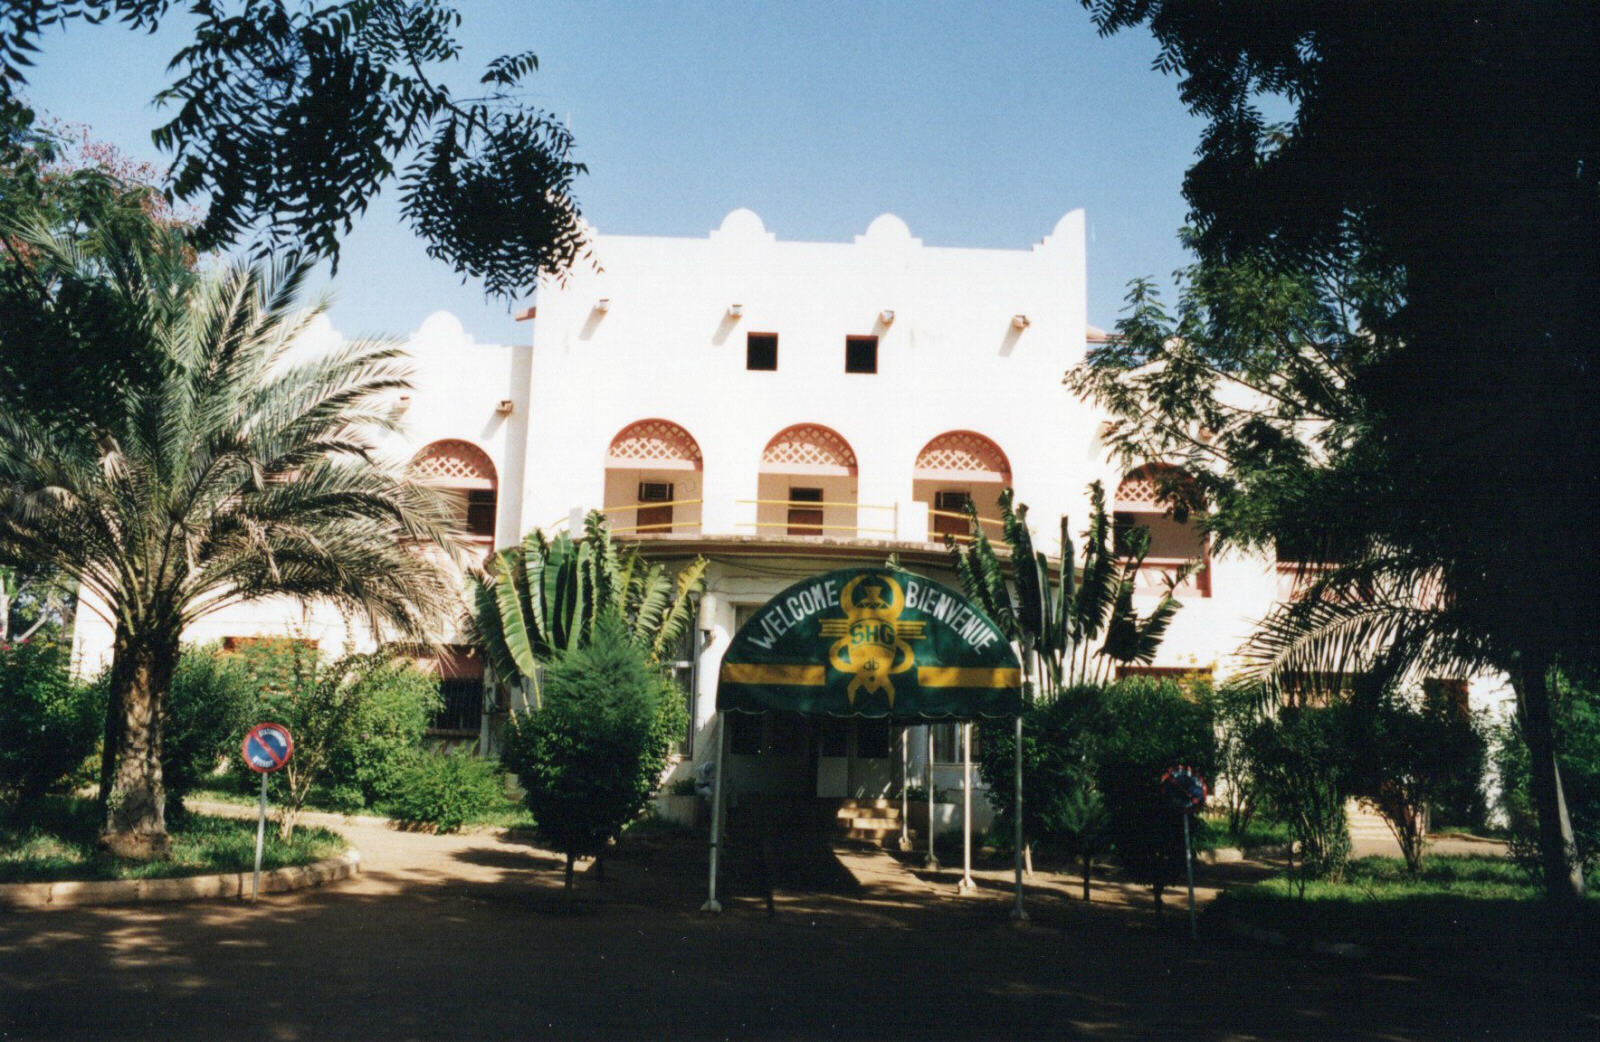 The Ran hotel in Ouagadougu, Birkina Faso